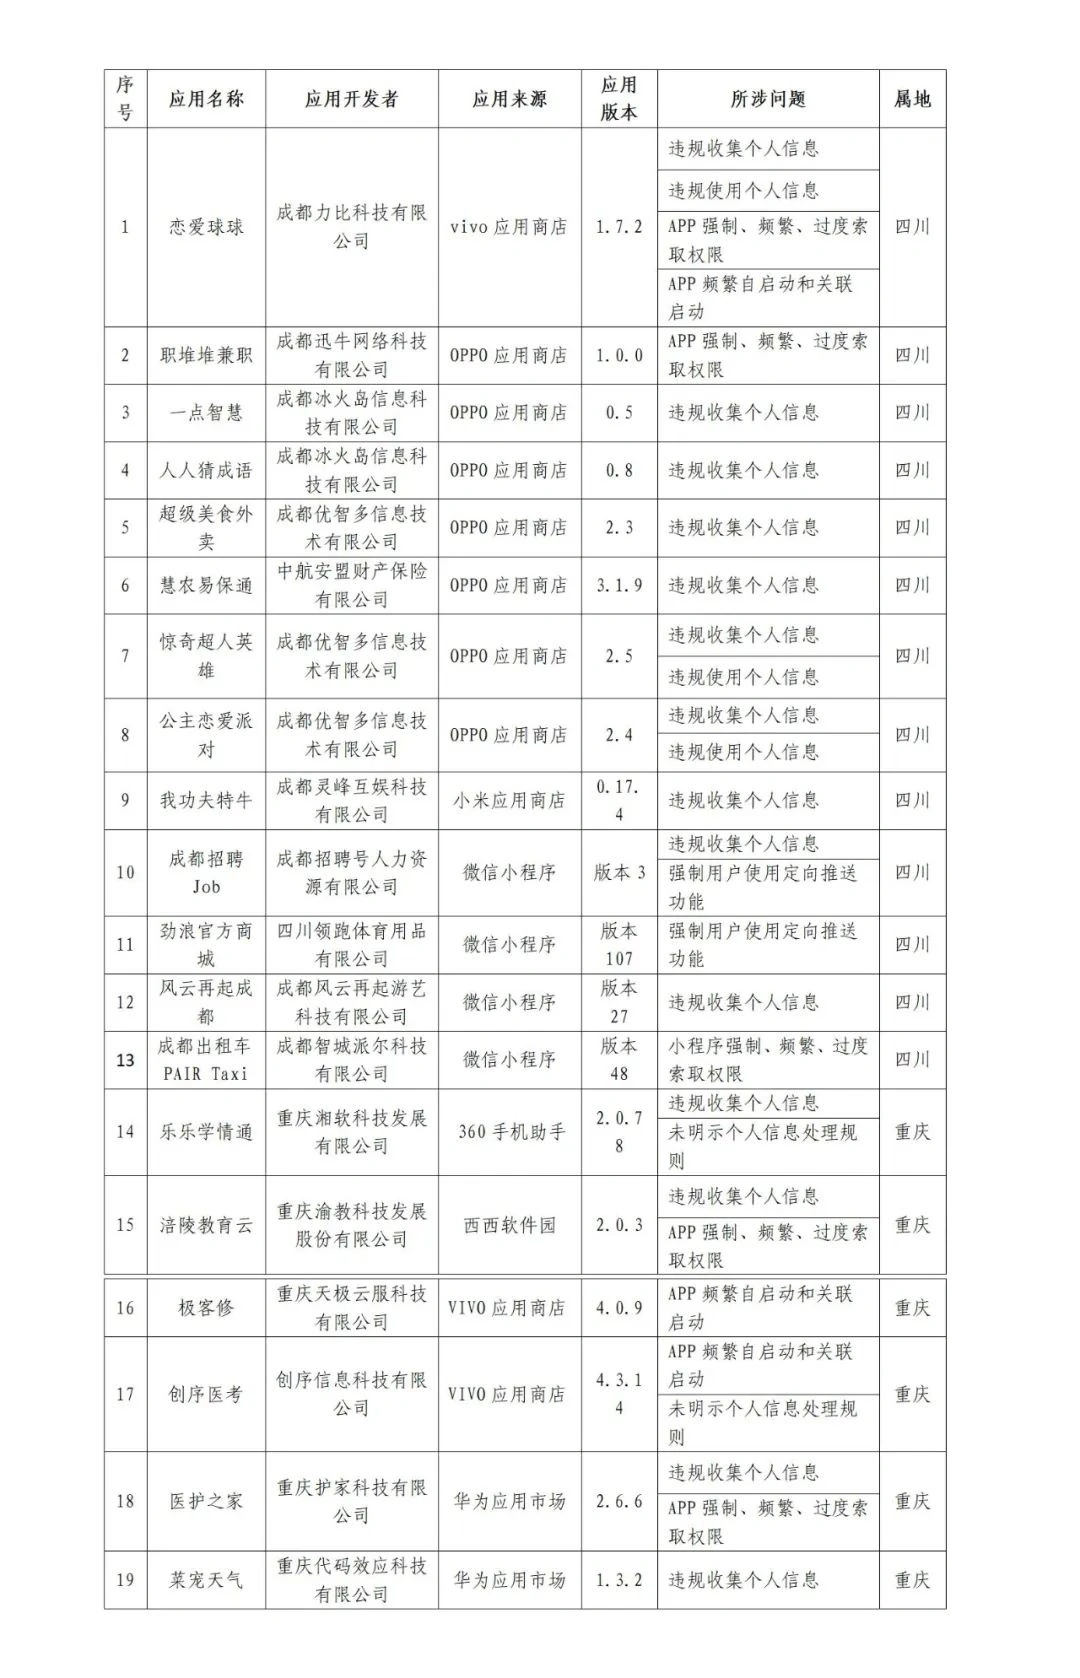 四川省和重庆市两地联合通报 19 款侵害用户权益的 App 和小程序